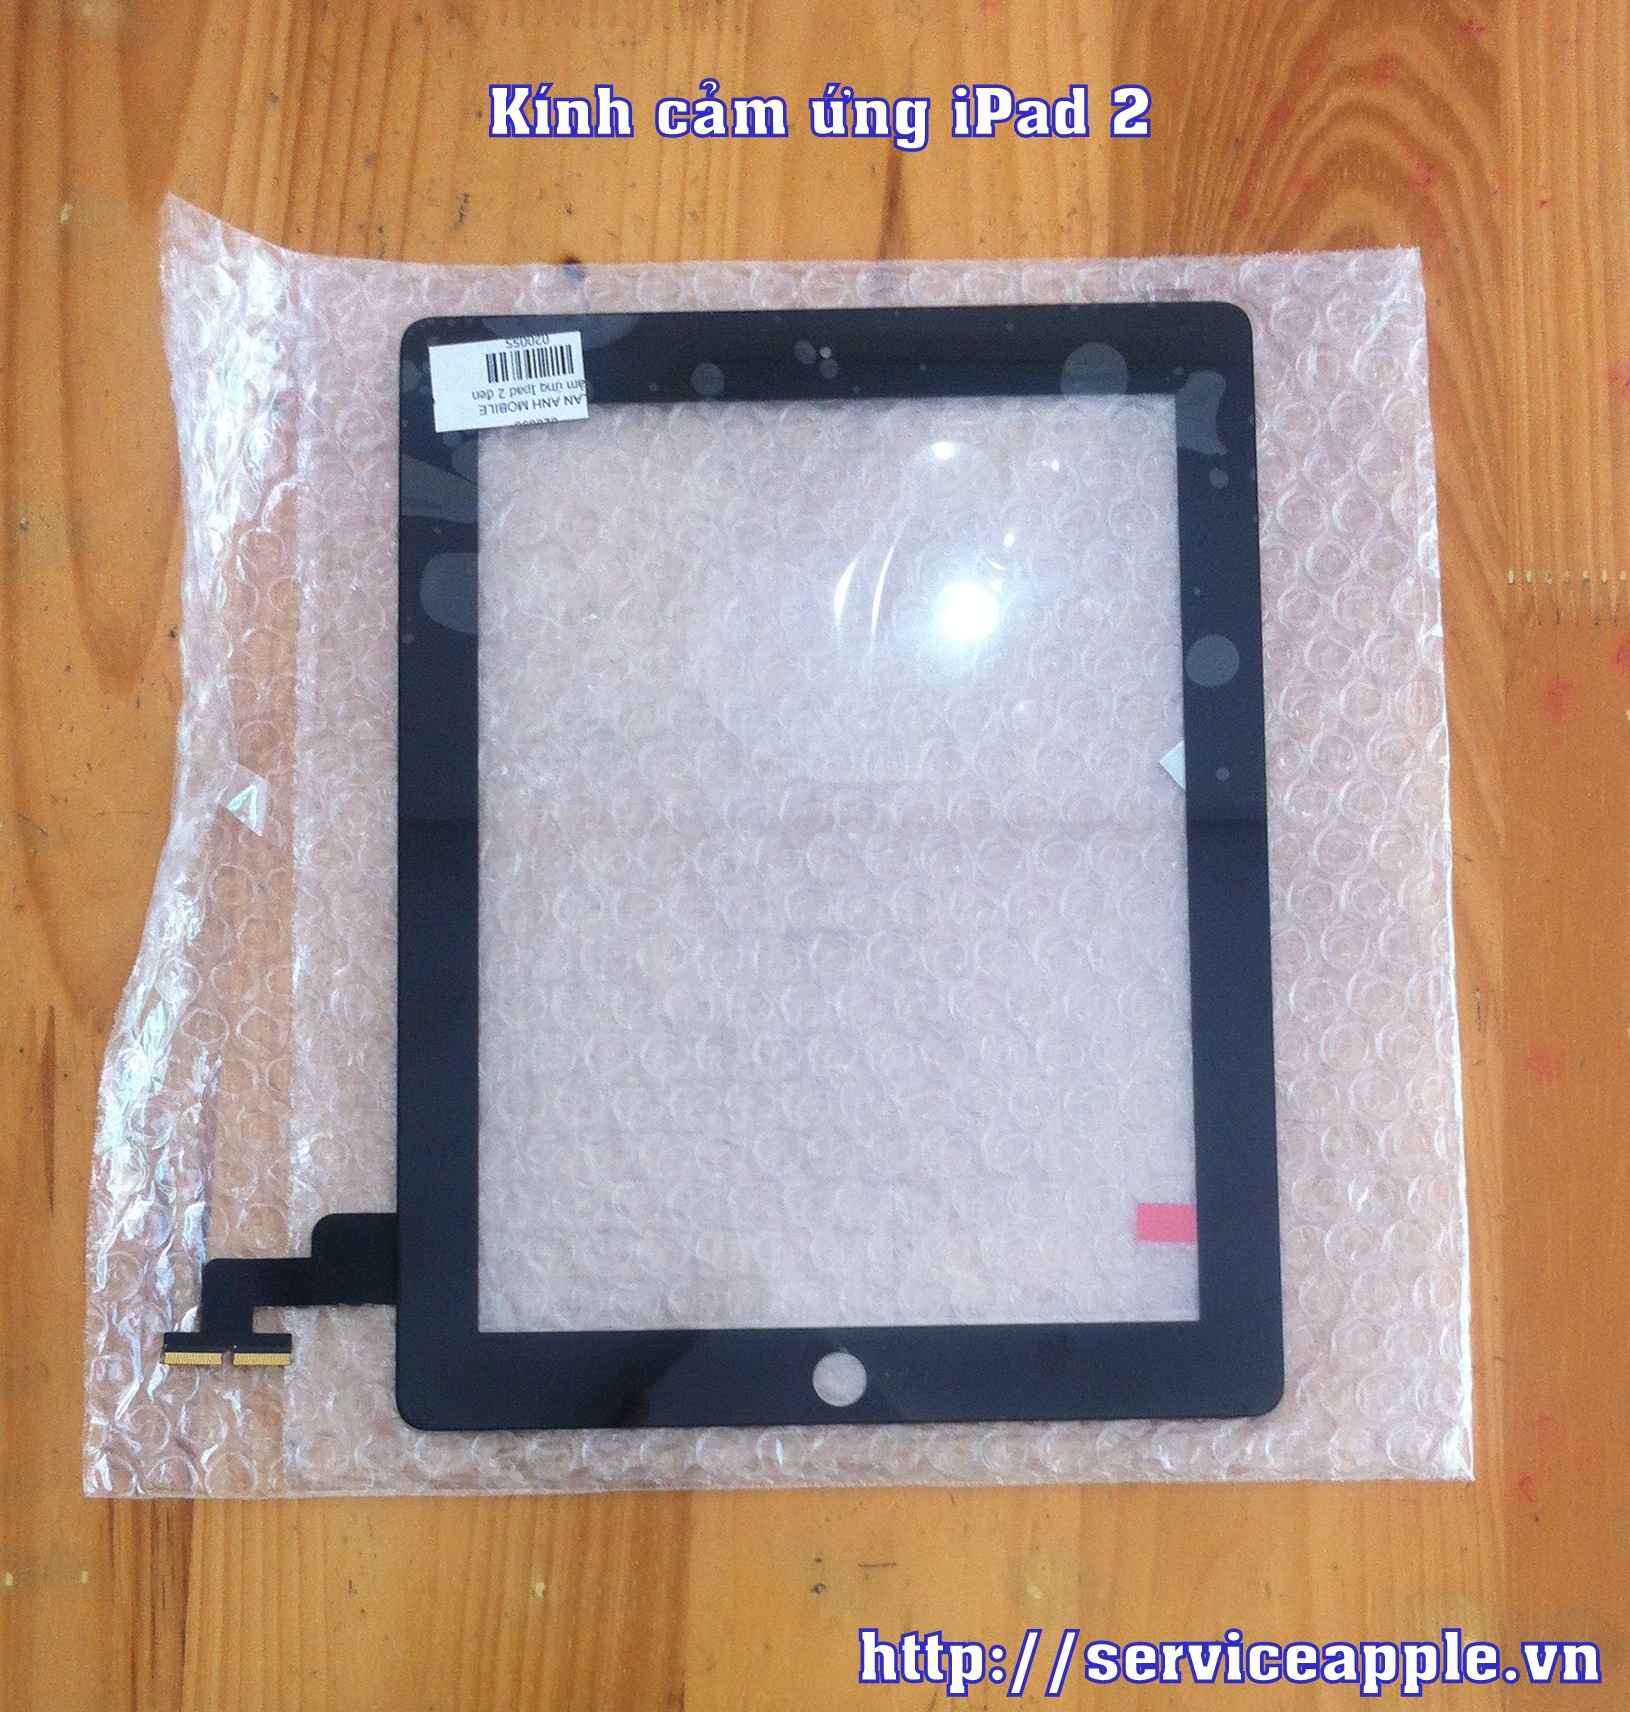 Kính cảm ứng iPad 2 